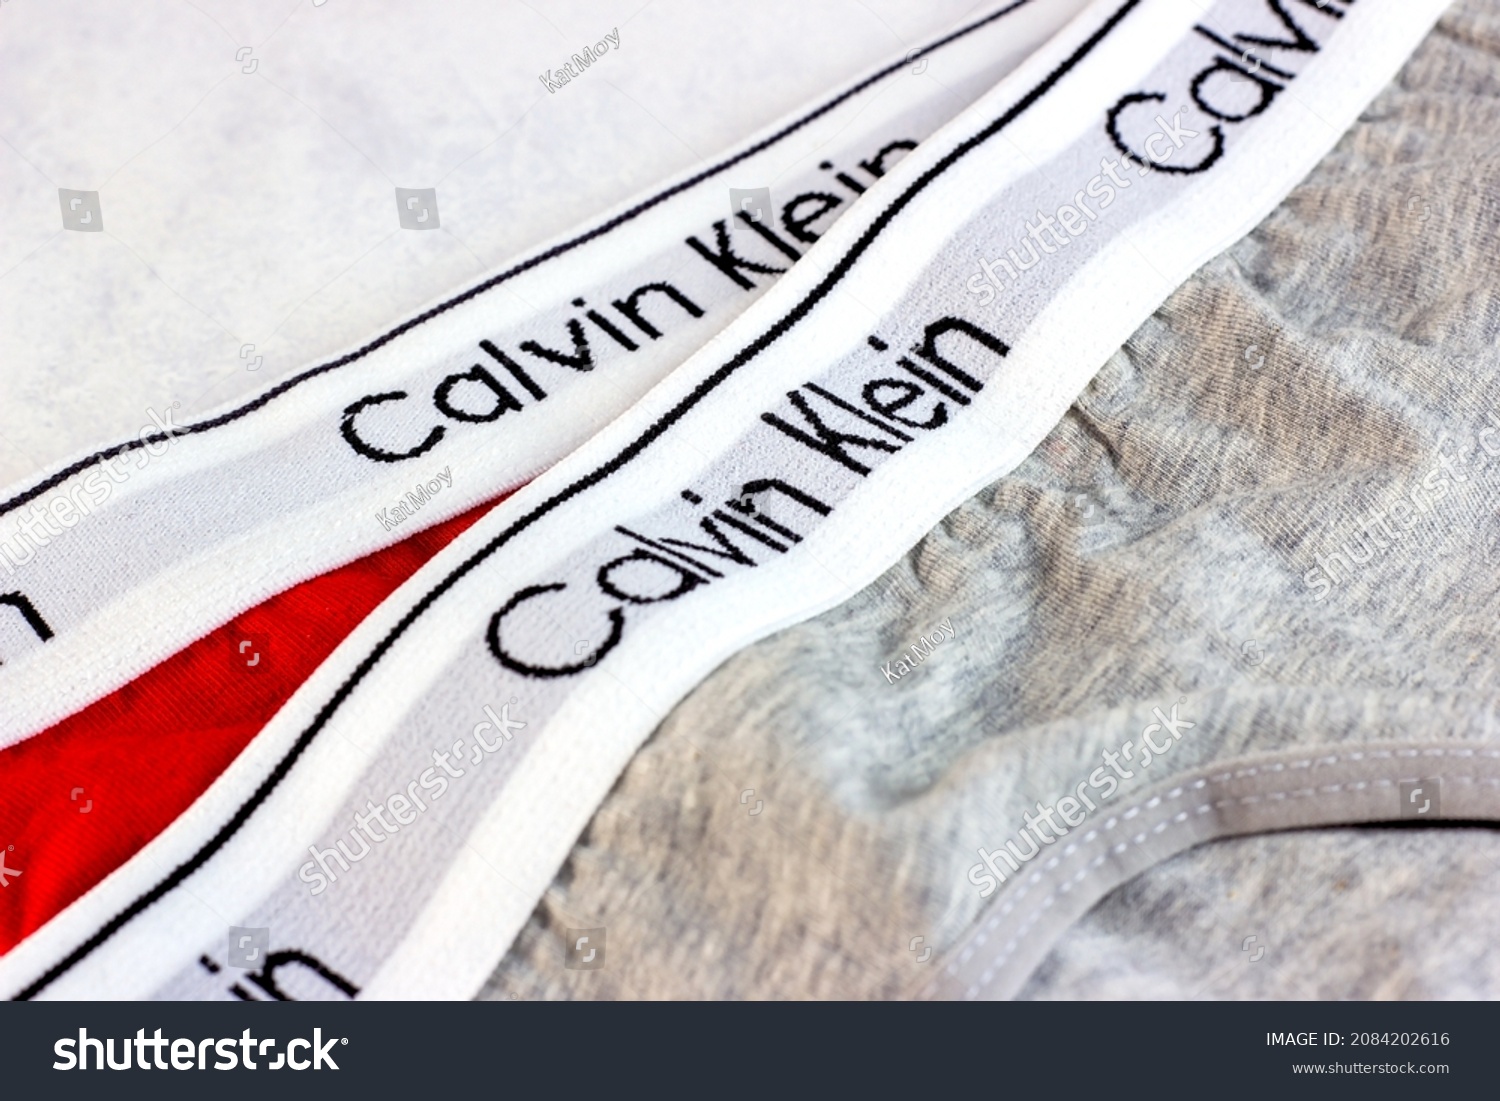 223 Calvin klein underwear Images, Stock Photos & Vectors | Shutterstock